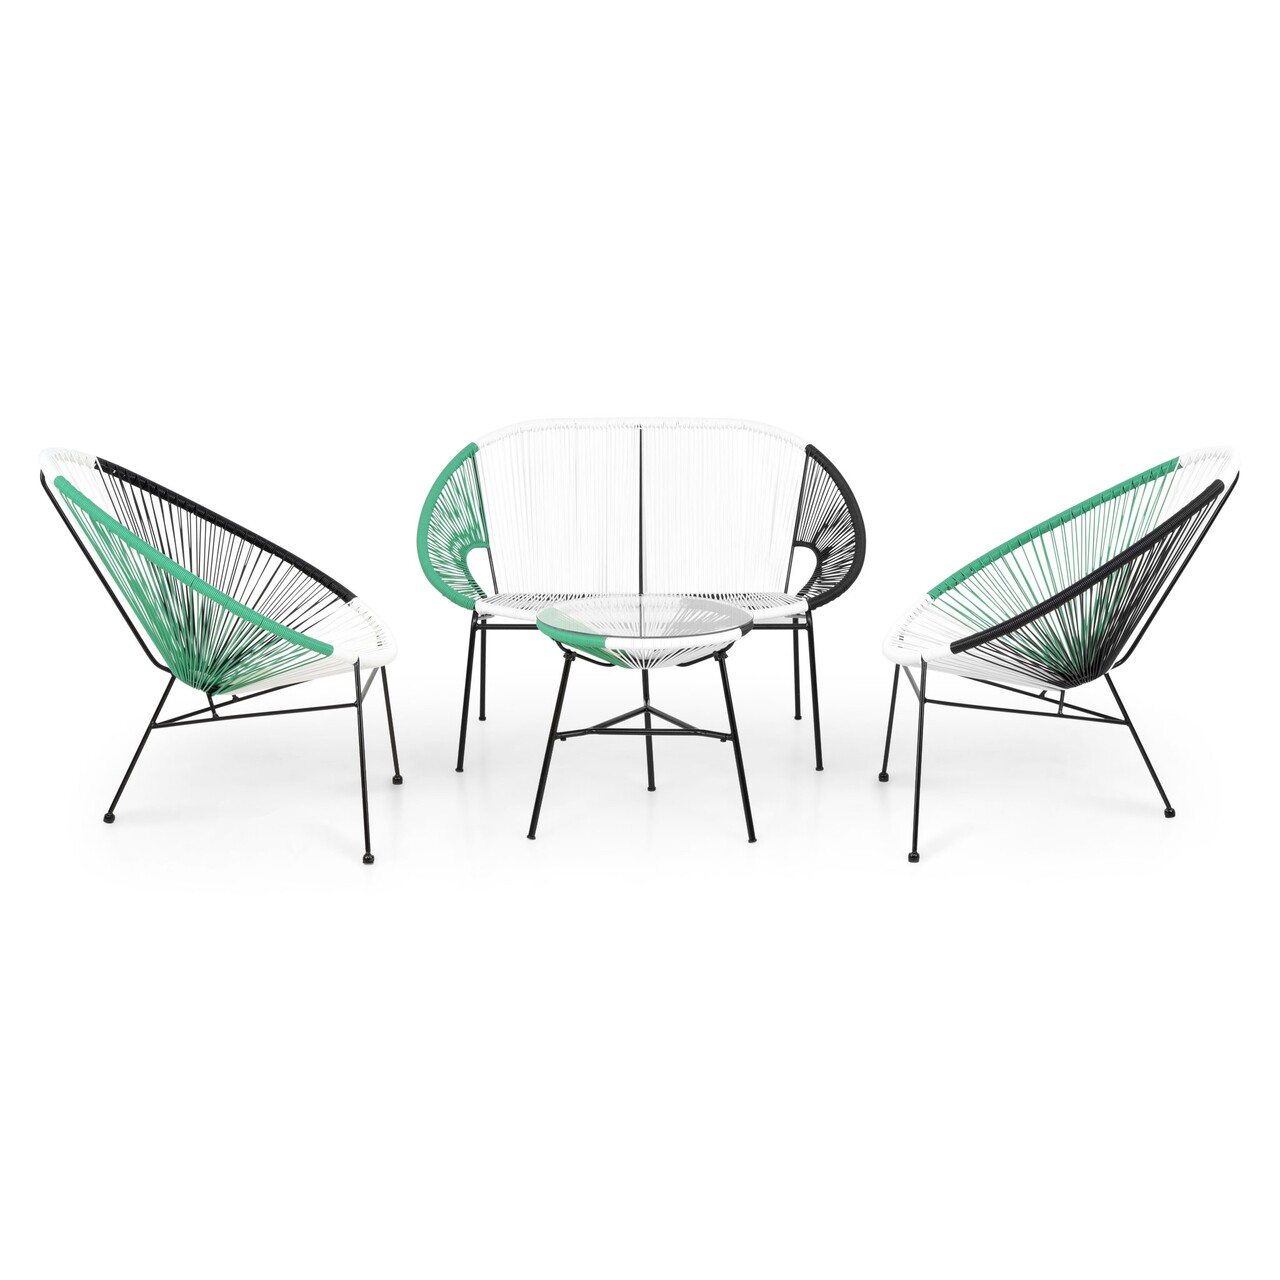 Maison corfu/kerti terasz bútor szett, 2 db fotel kanapéval és asztalka, acél, zöld/fehér/fekete